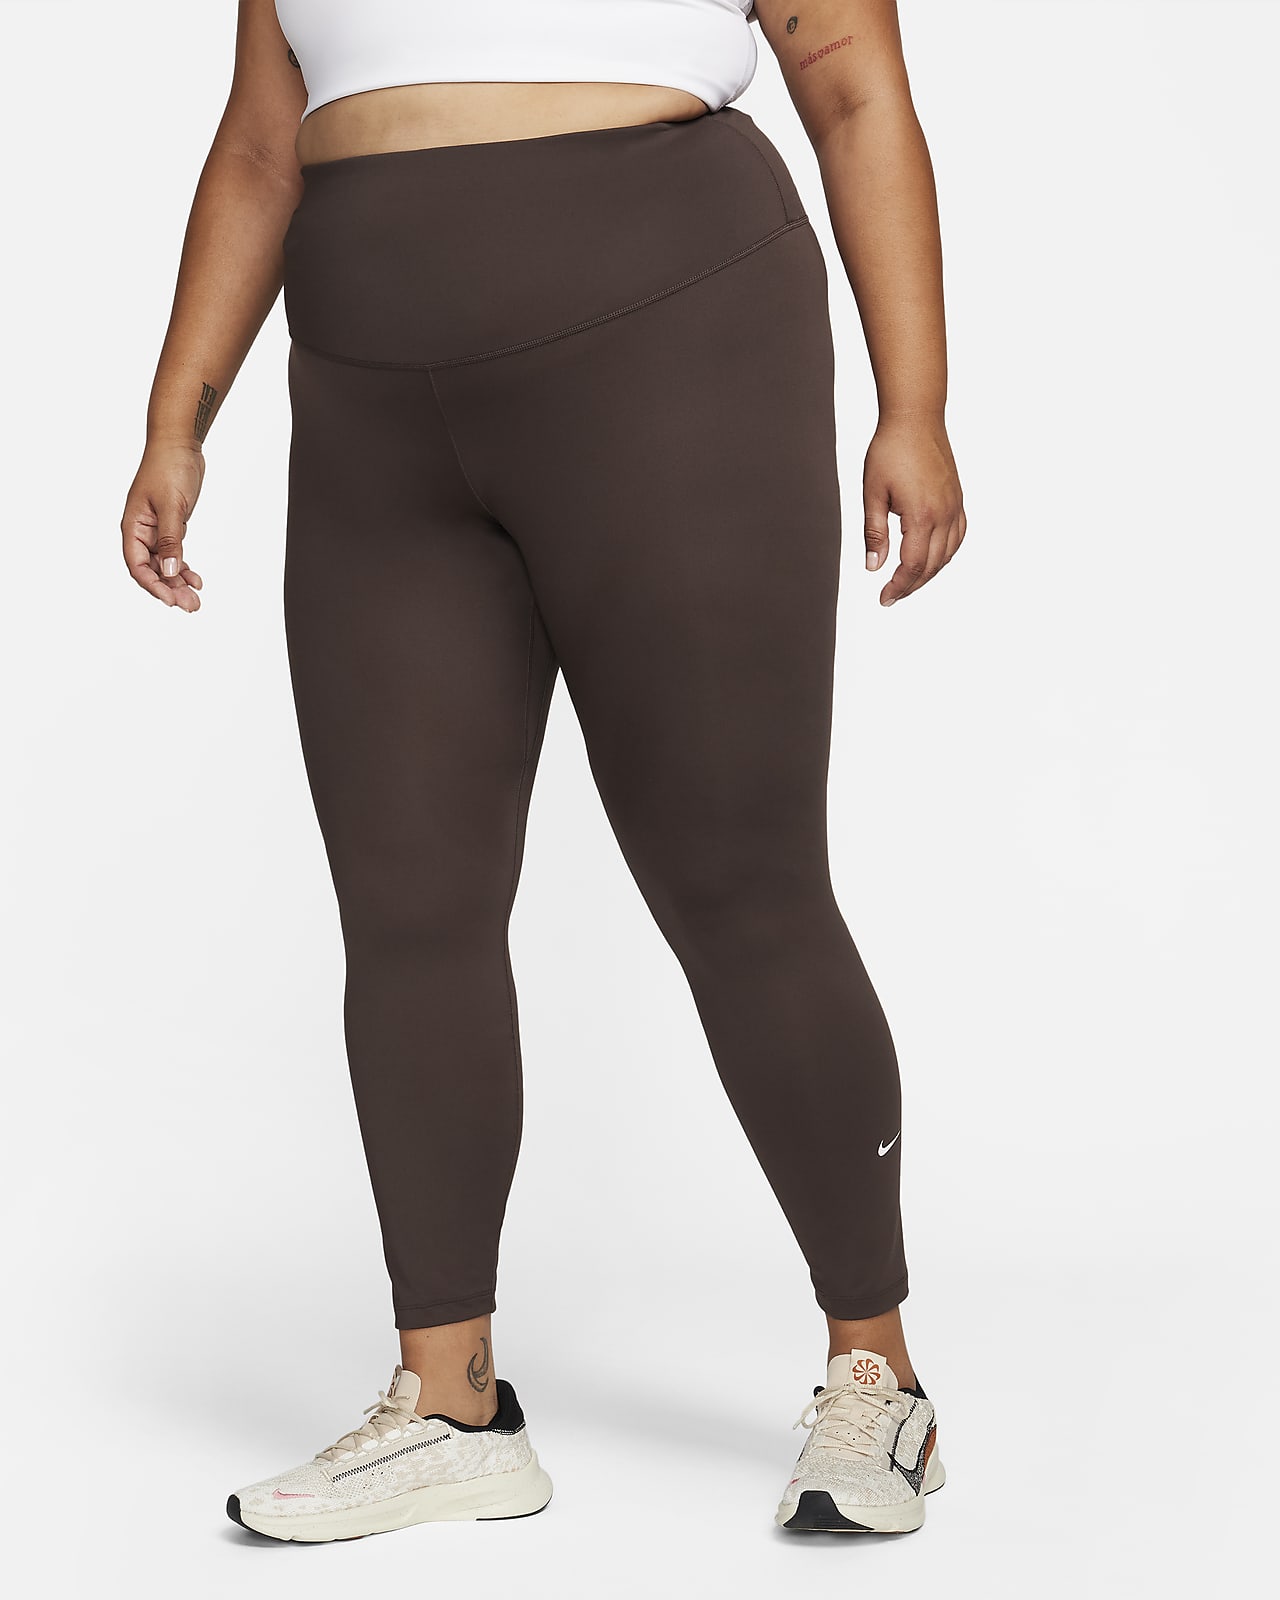 Nike One Damen-Leggings mit hohem Bund (große Größe)